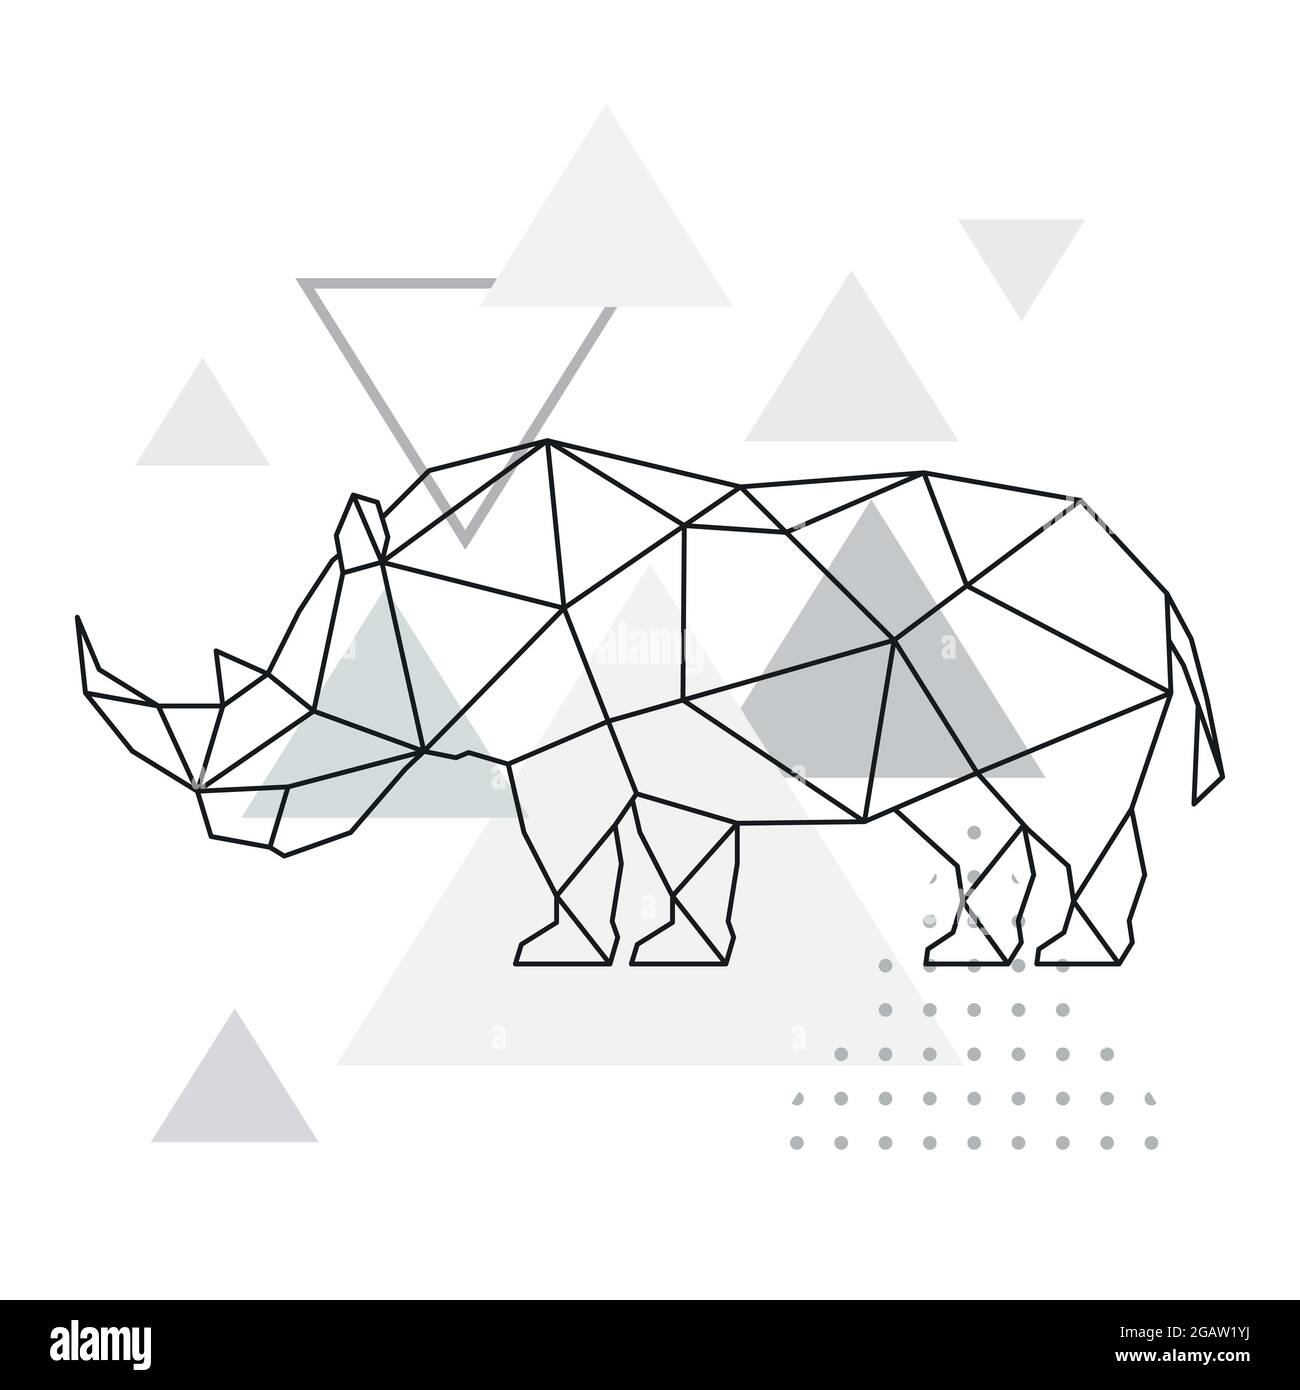 Polygonales Nashorn auf abstraktem Hintergrund mit Dreiecken. Poster im geometrischen Stil. Vektor-Illustration für wilde Tiere. Stock Vektor